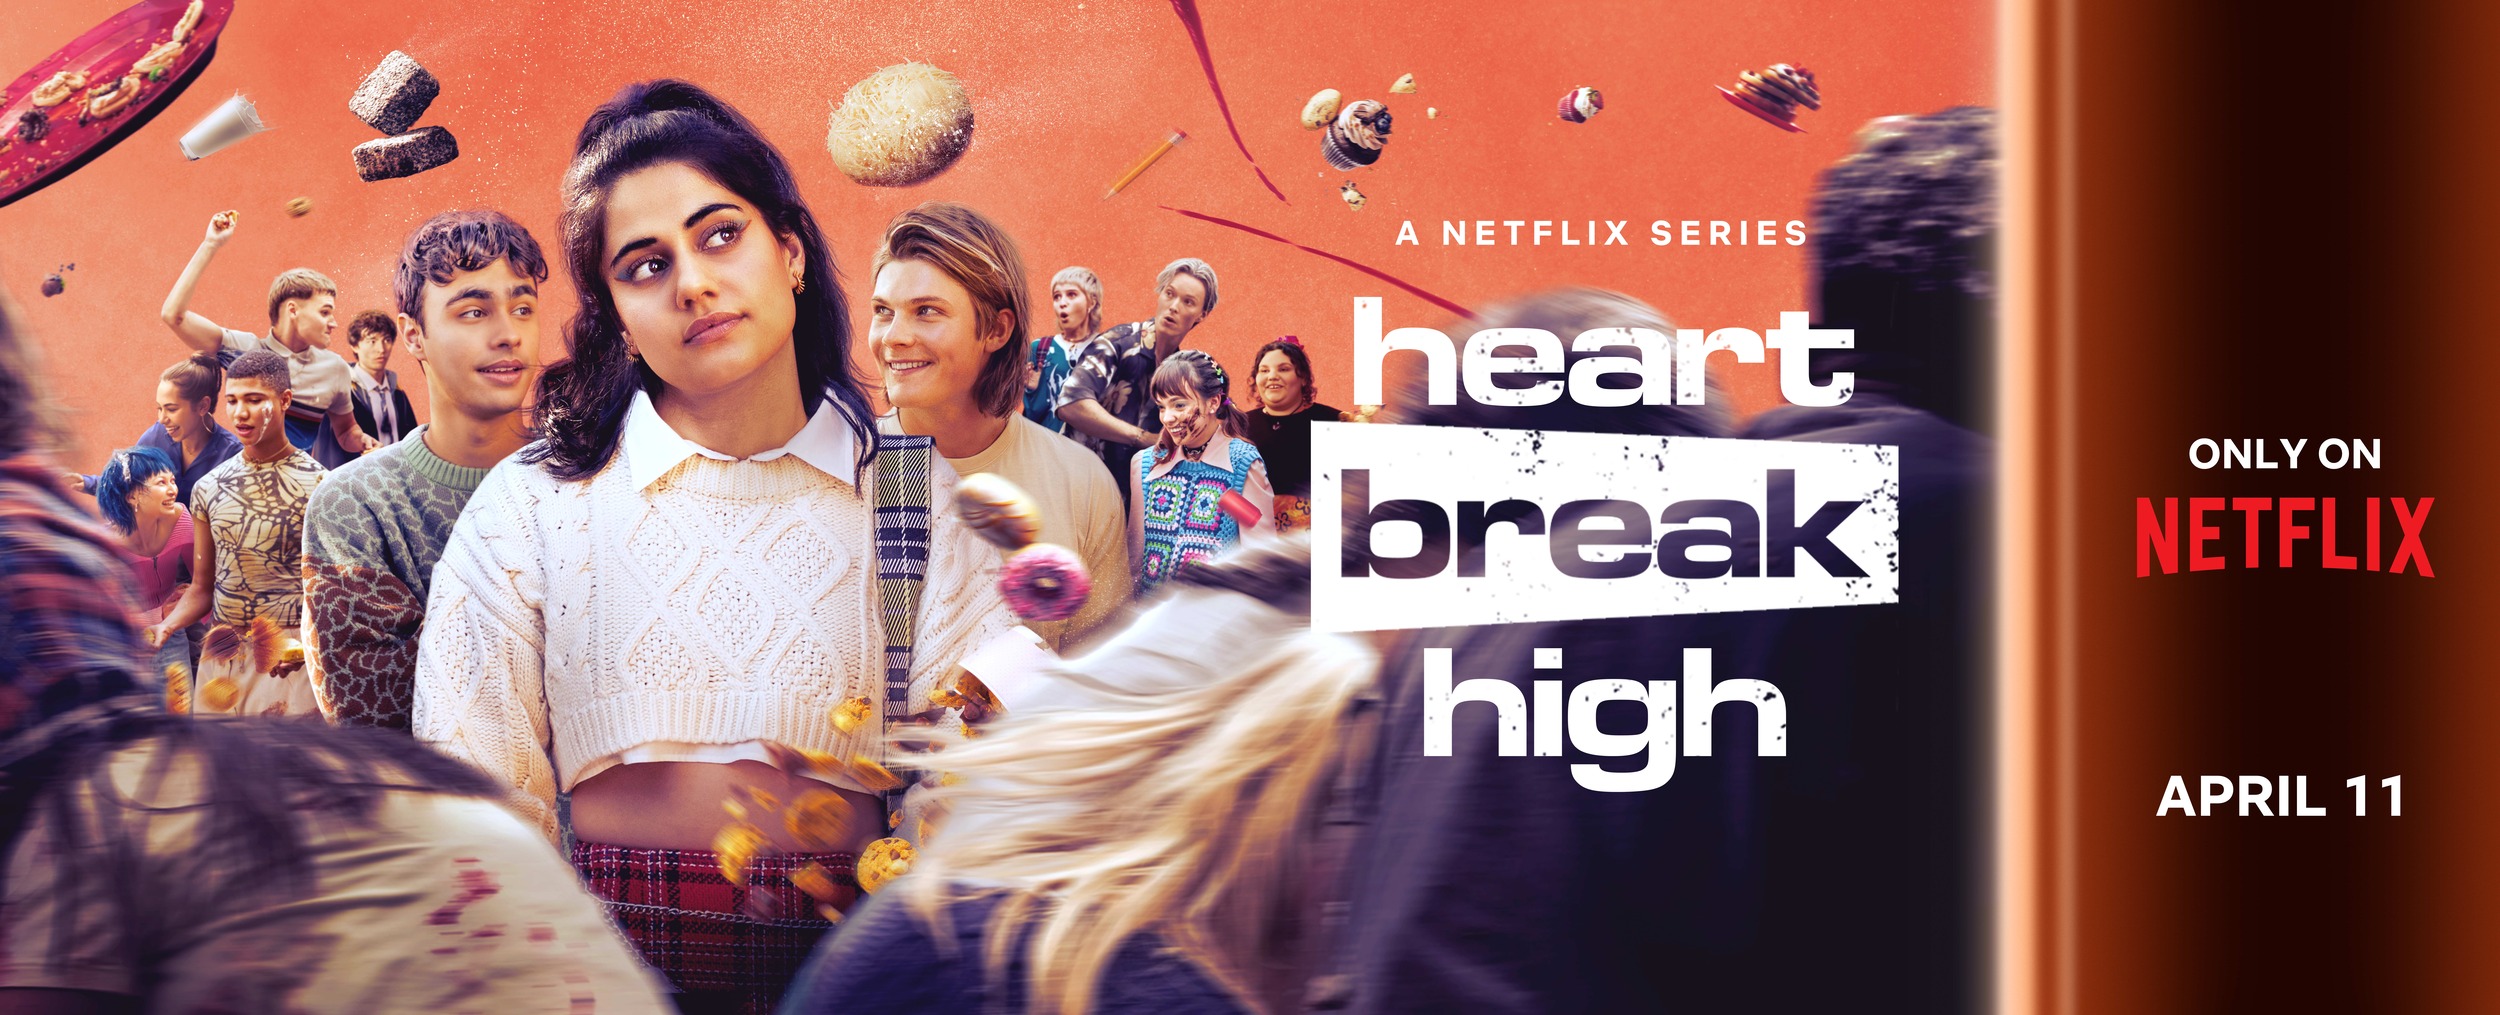 Mega Sized TV Poster Image for Heartbreak High (#6 of 6)